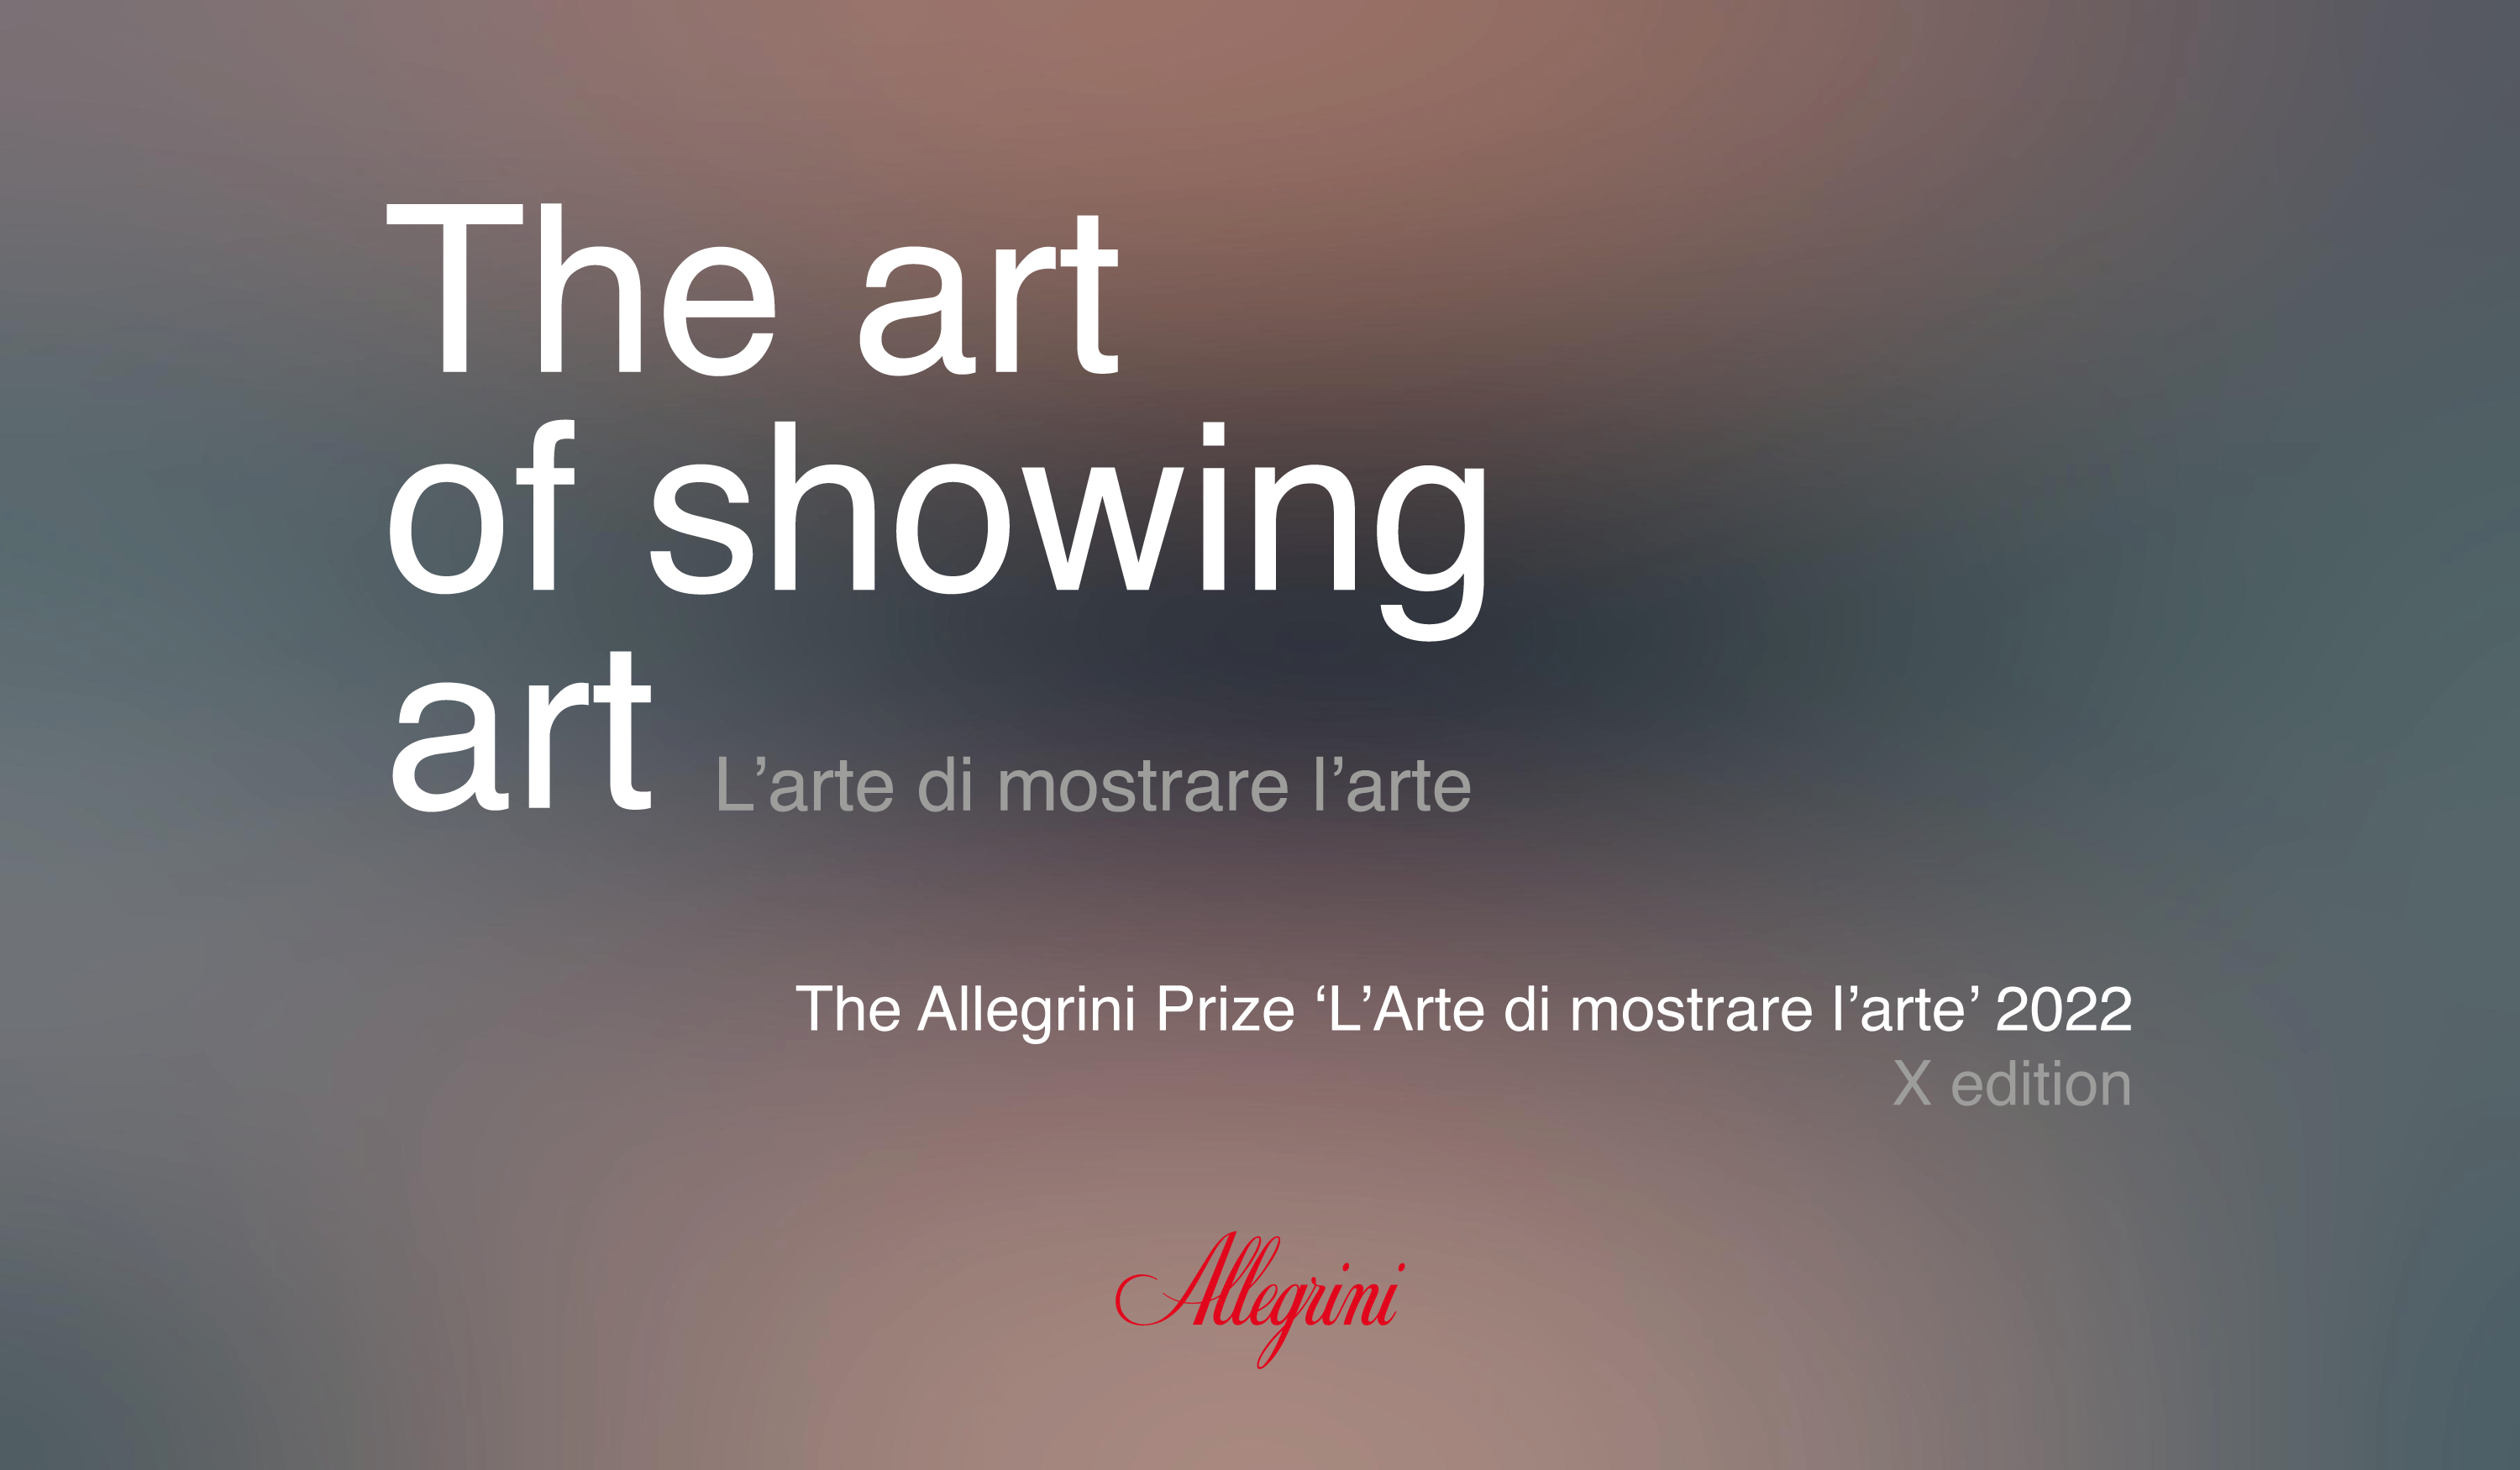 Michele Coppola for Gallerie D’Italia wins the Allegrini Prize ‘L’Arte di mostrare l’Arte’ 2022